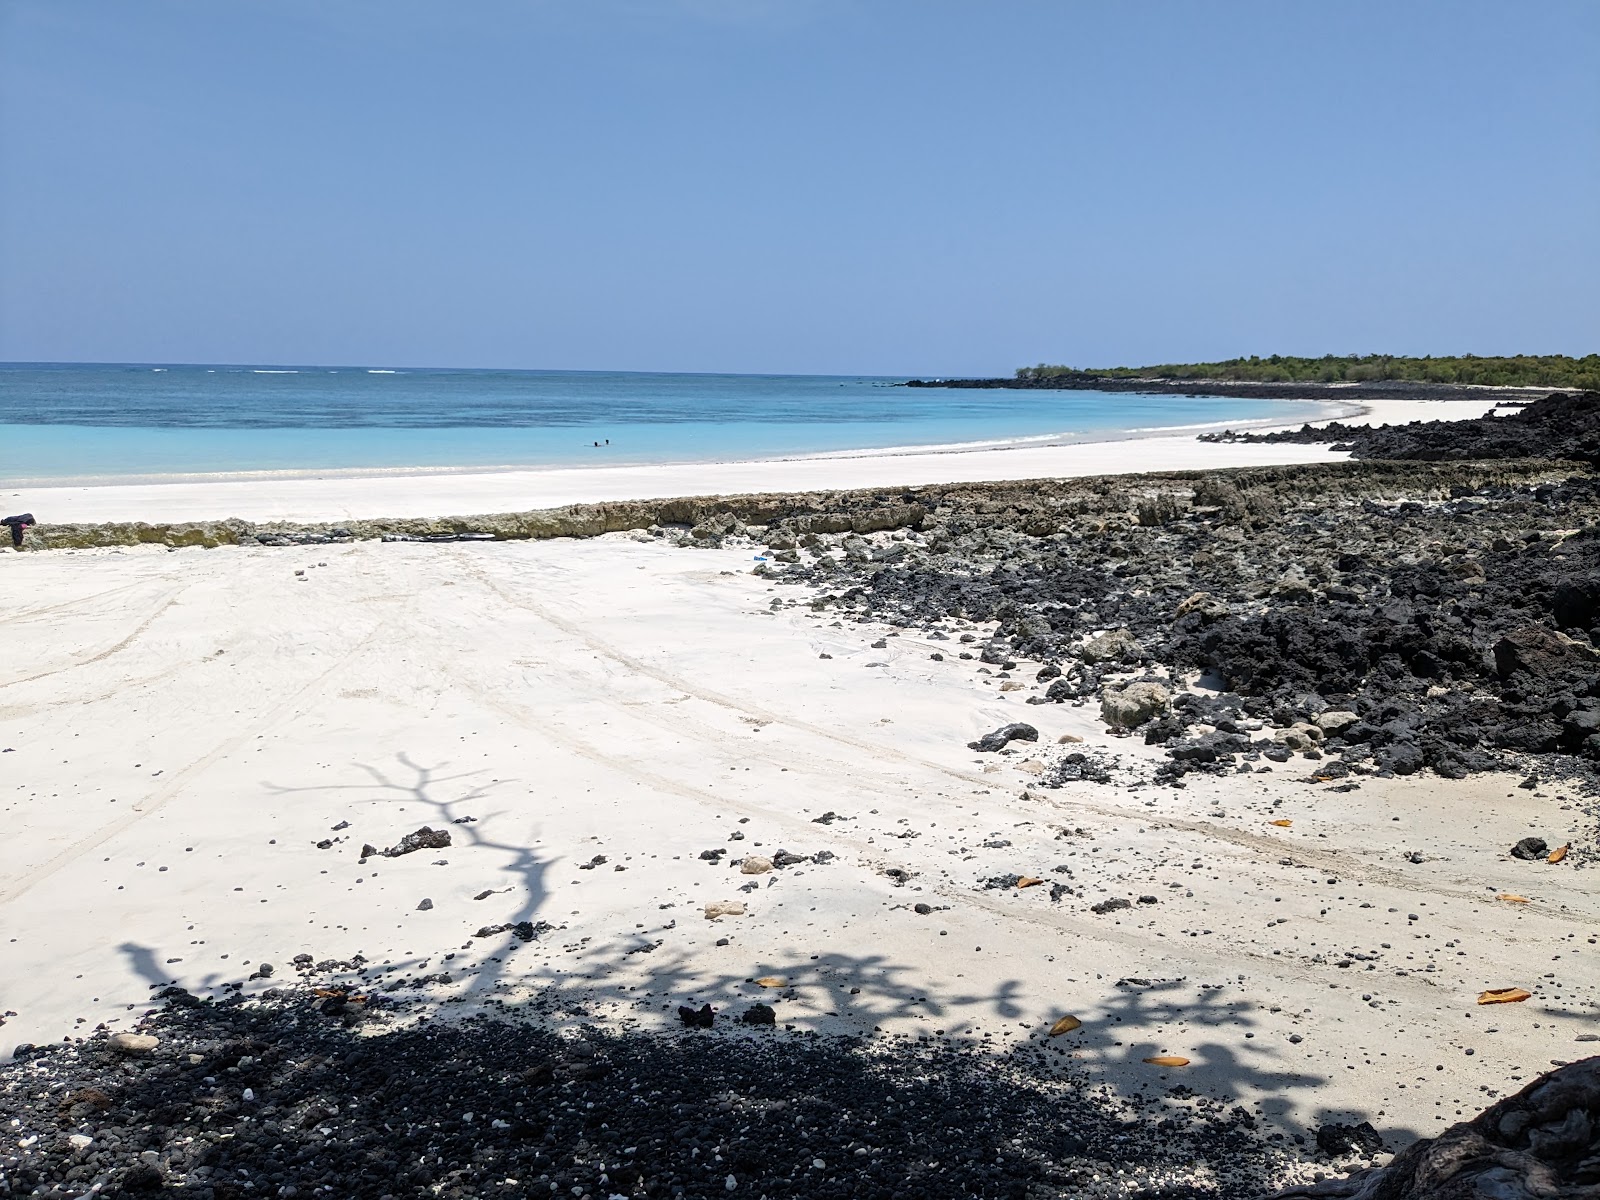 Sada Beach'in fotoğrafı geniş plaj ile birlikte